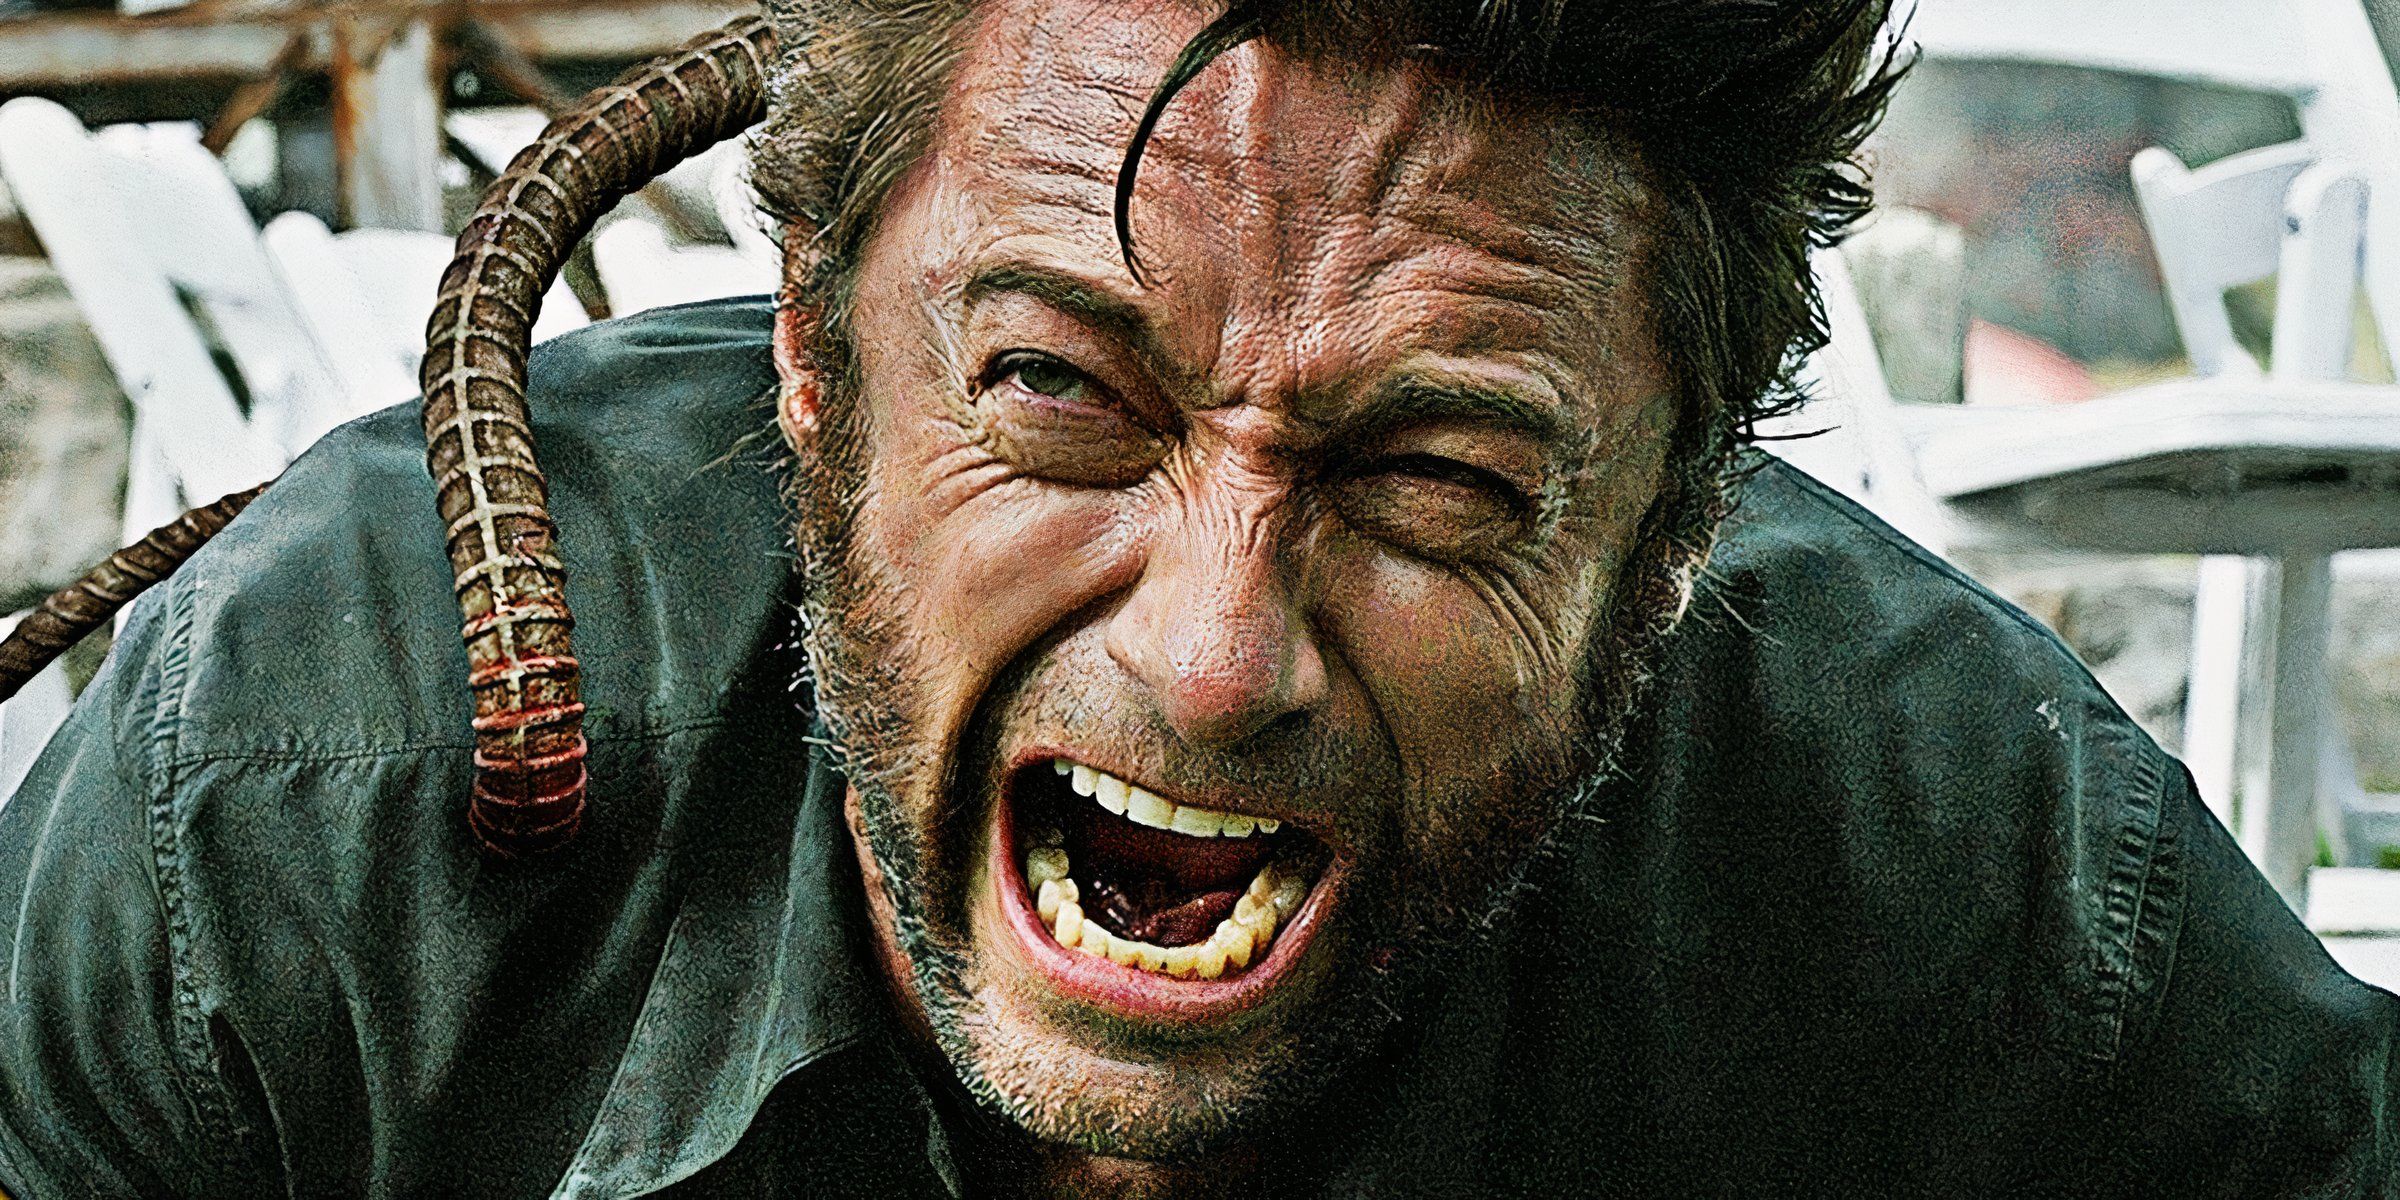 La trama de Wolverine de 47 años de X-Men finalmente obtiene una buena respuesta